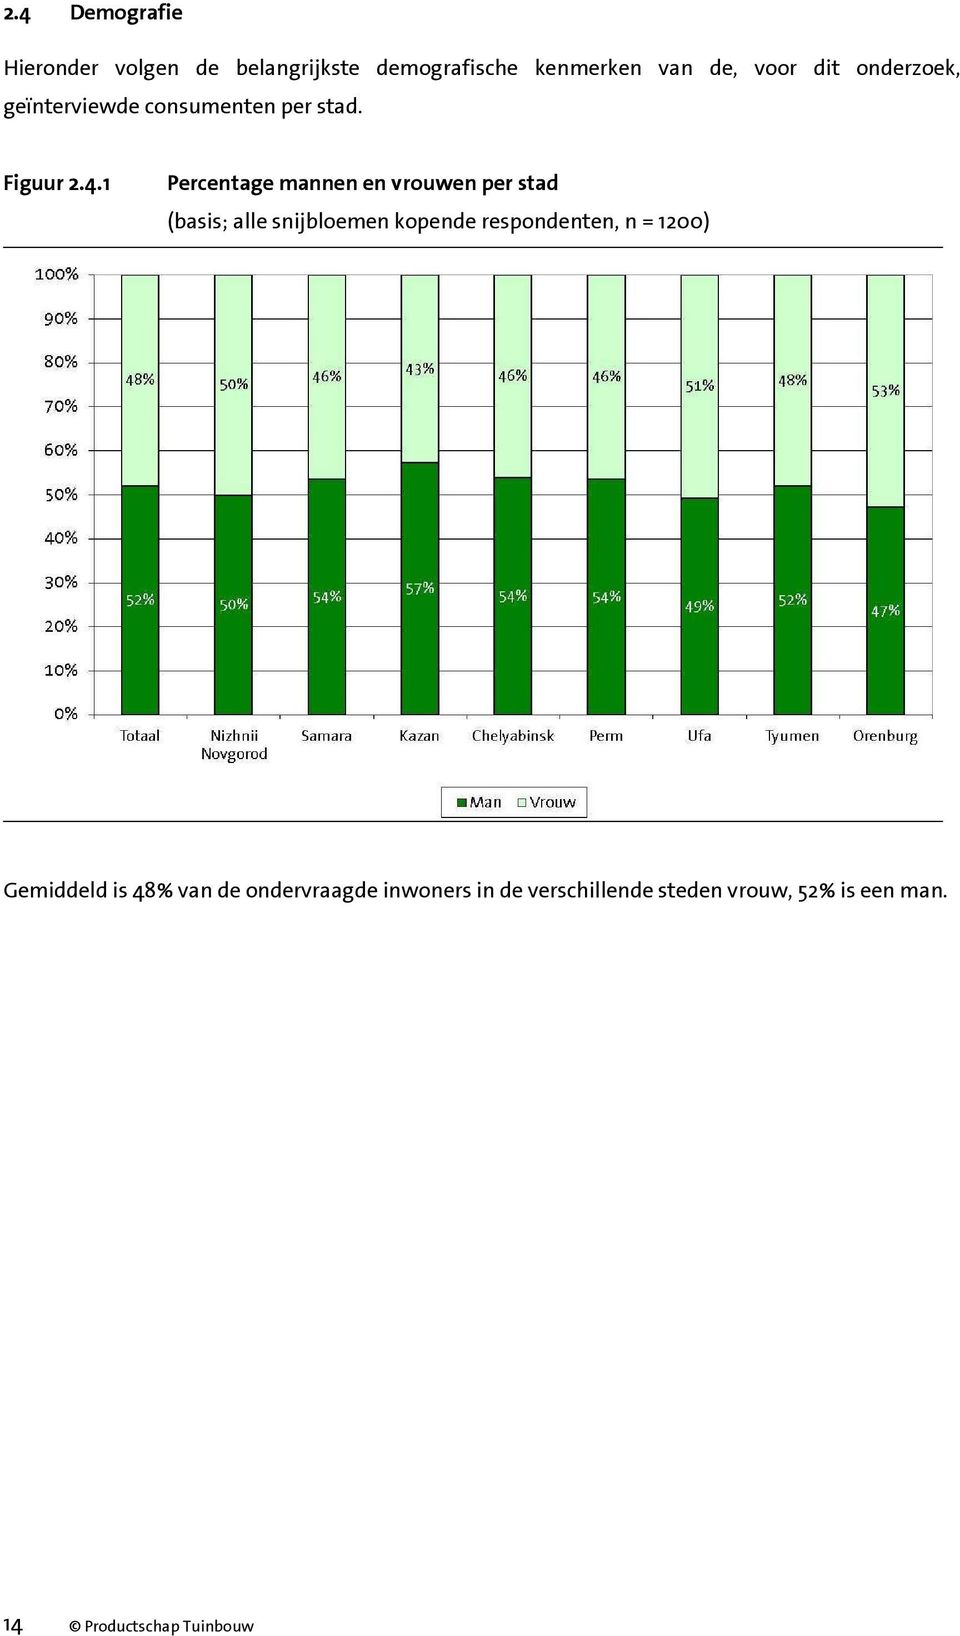 1 Percentage mannen en vrouwen per stad (basis; alle snijbloemen kopende